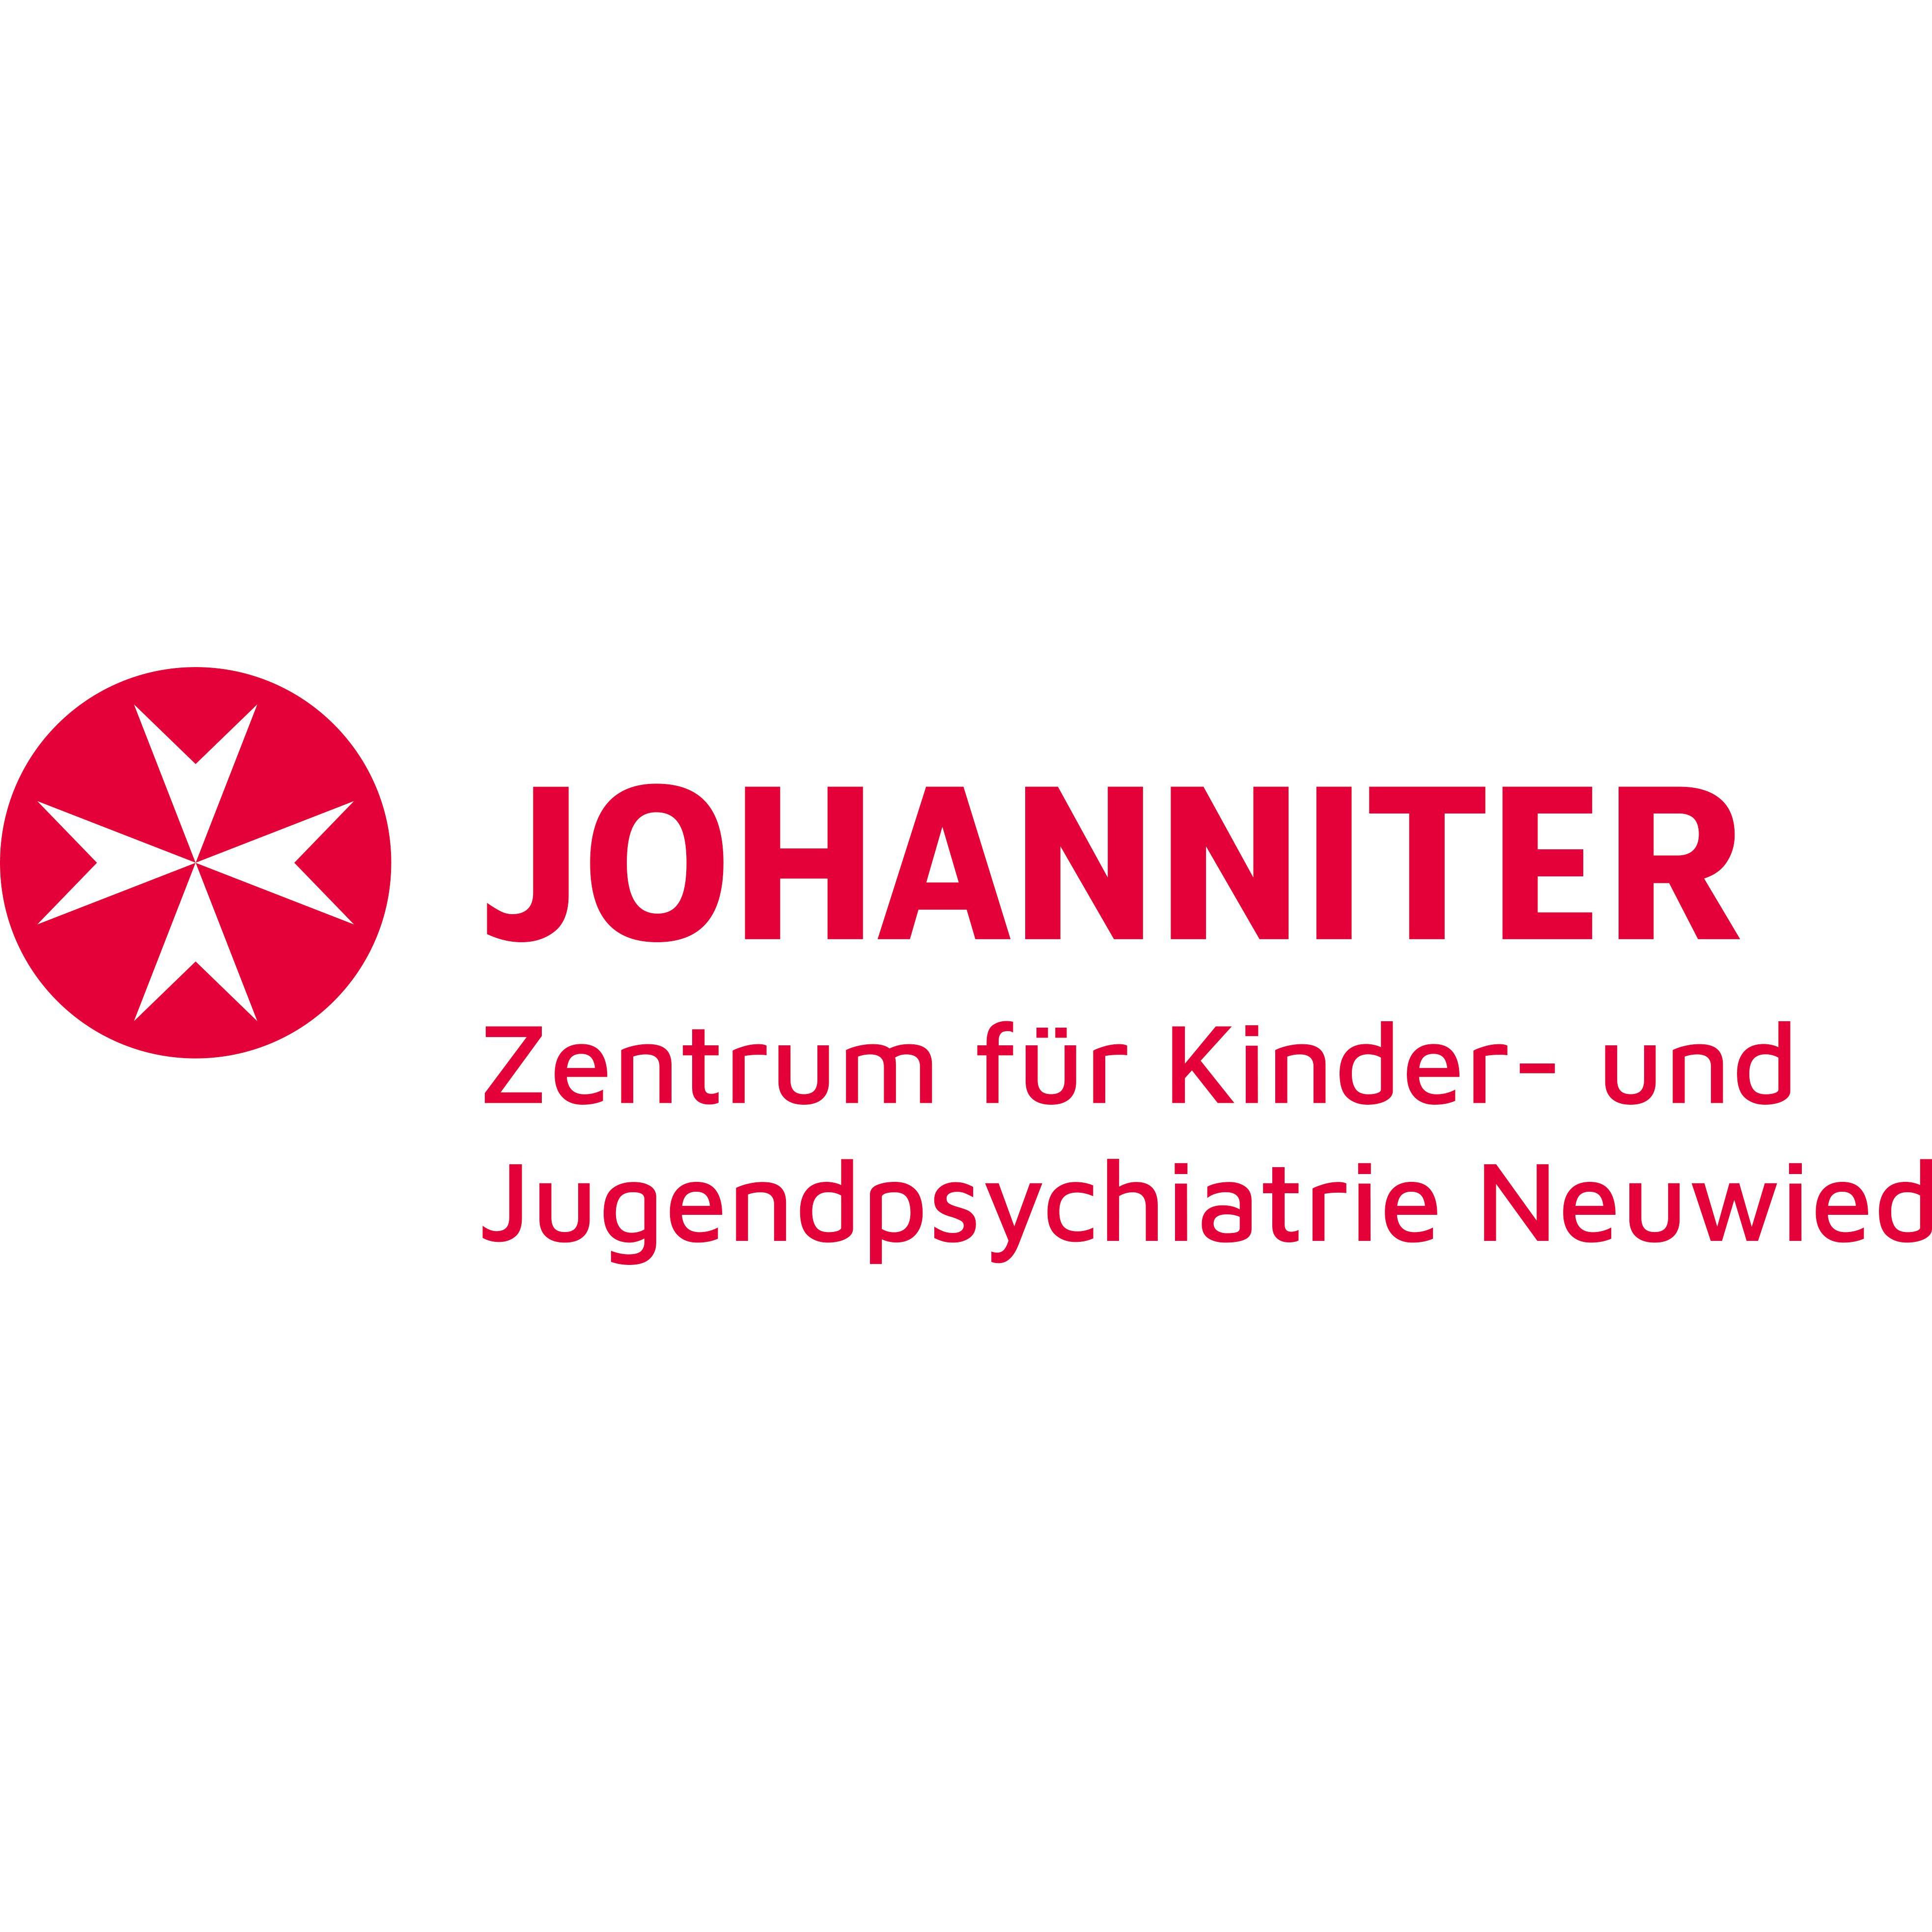 Johanniter-Zentrum für Kinder- und Jugendpsychiatrie Neuwied Logo